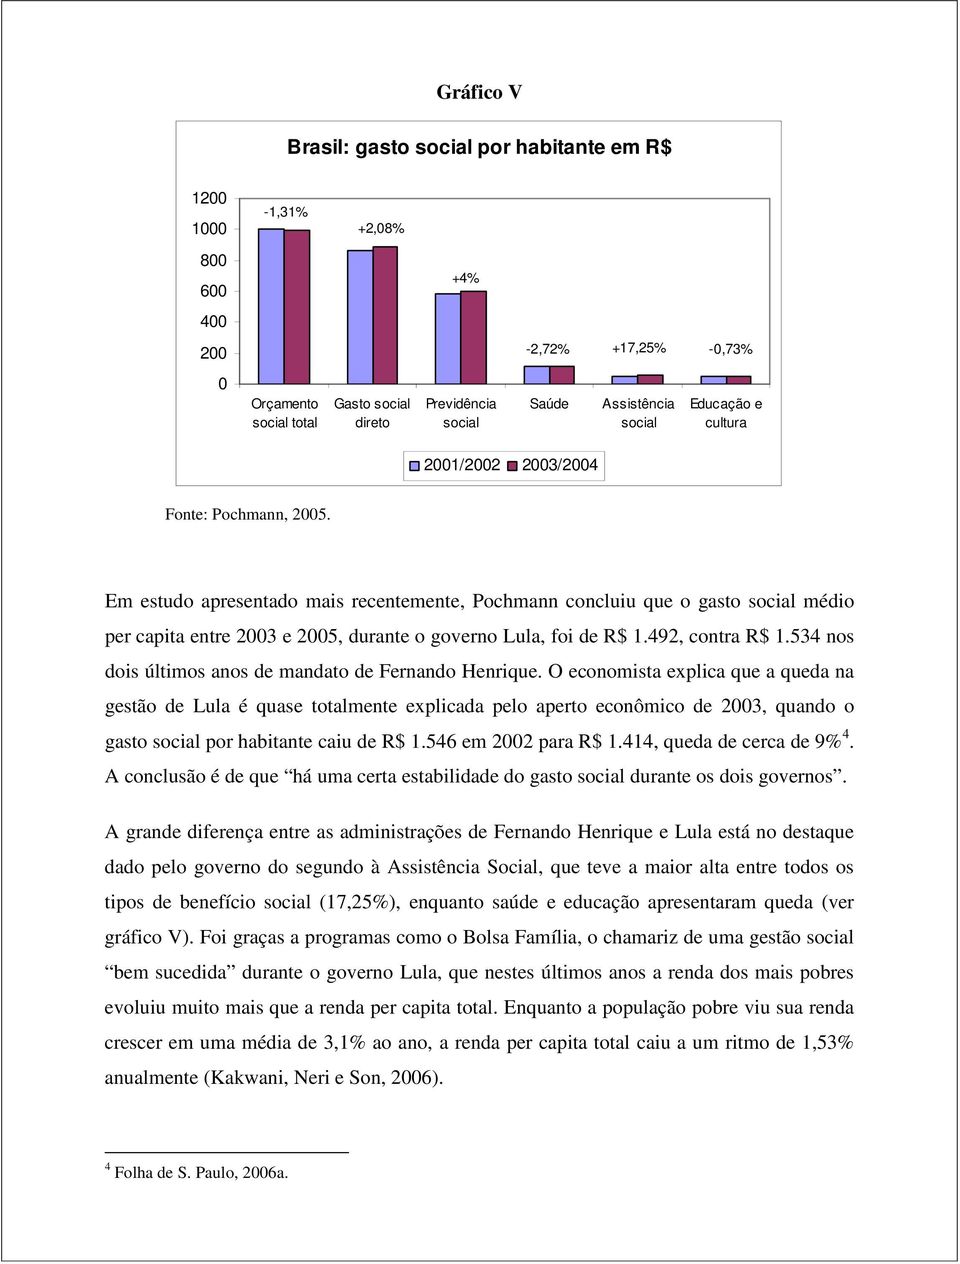 Em estudo apresentado mais recentemente, Pochmann concluiu que o gasto social médio per capita entre 2003 e 2005, durante o governo Lula, foi de R$ 1.492, contra R$ 1.